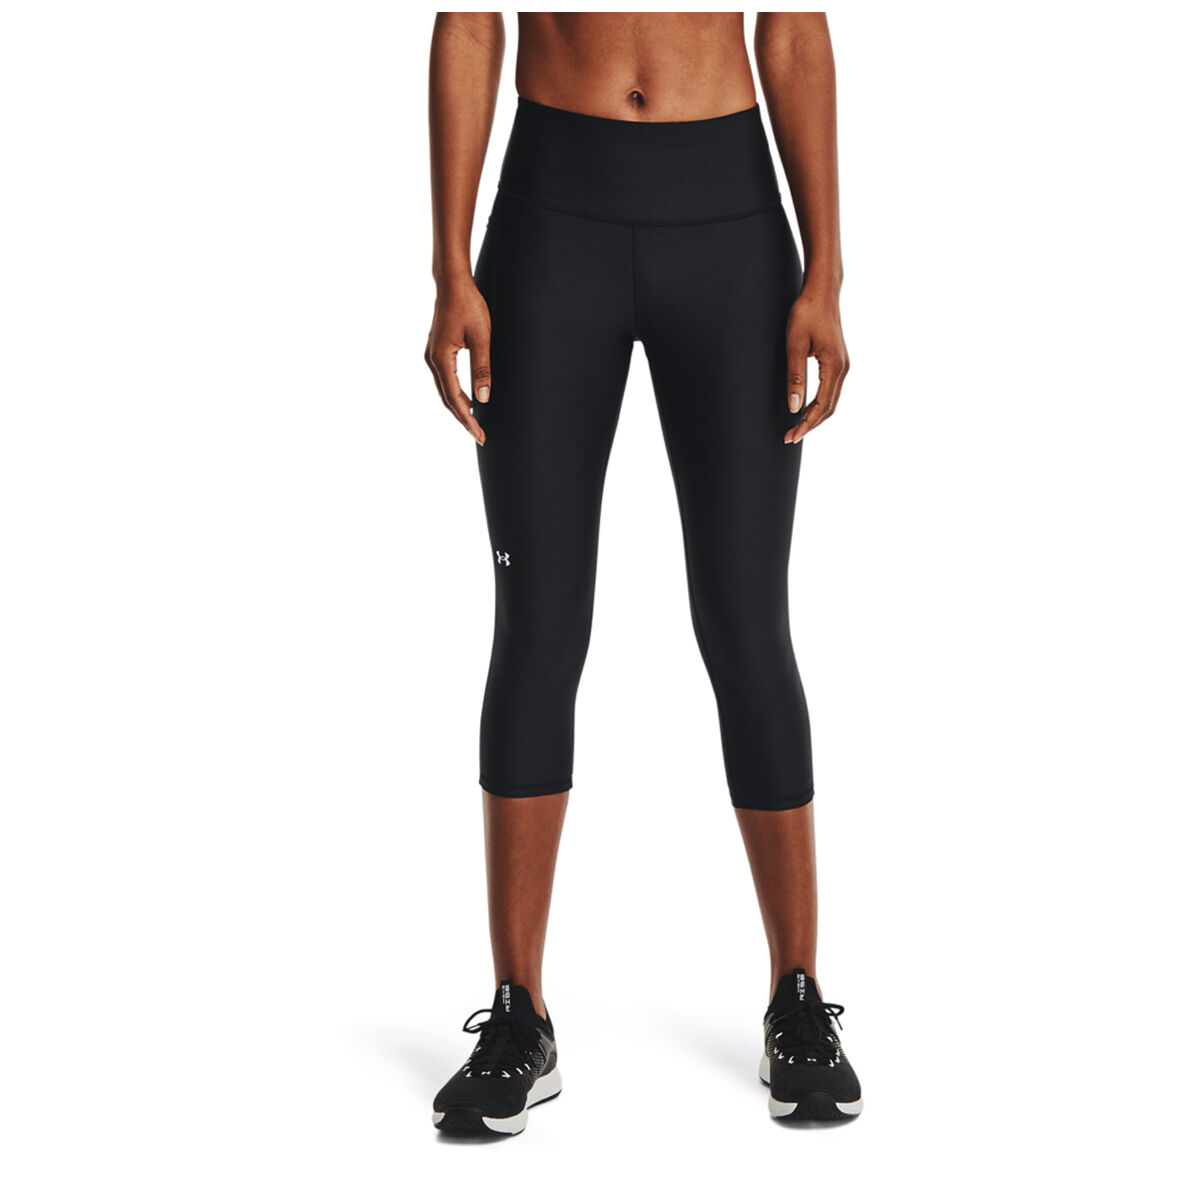 NWT - Women's - Jockey Sport - Workout Capri Pants / Leggings - Size XL